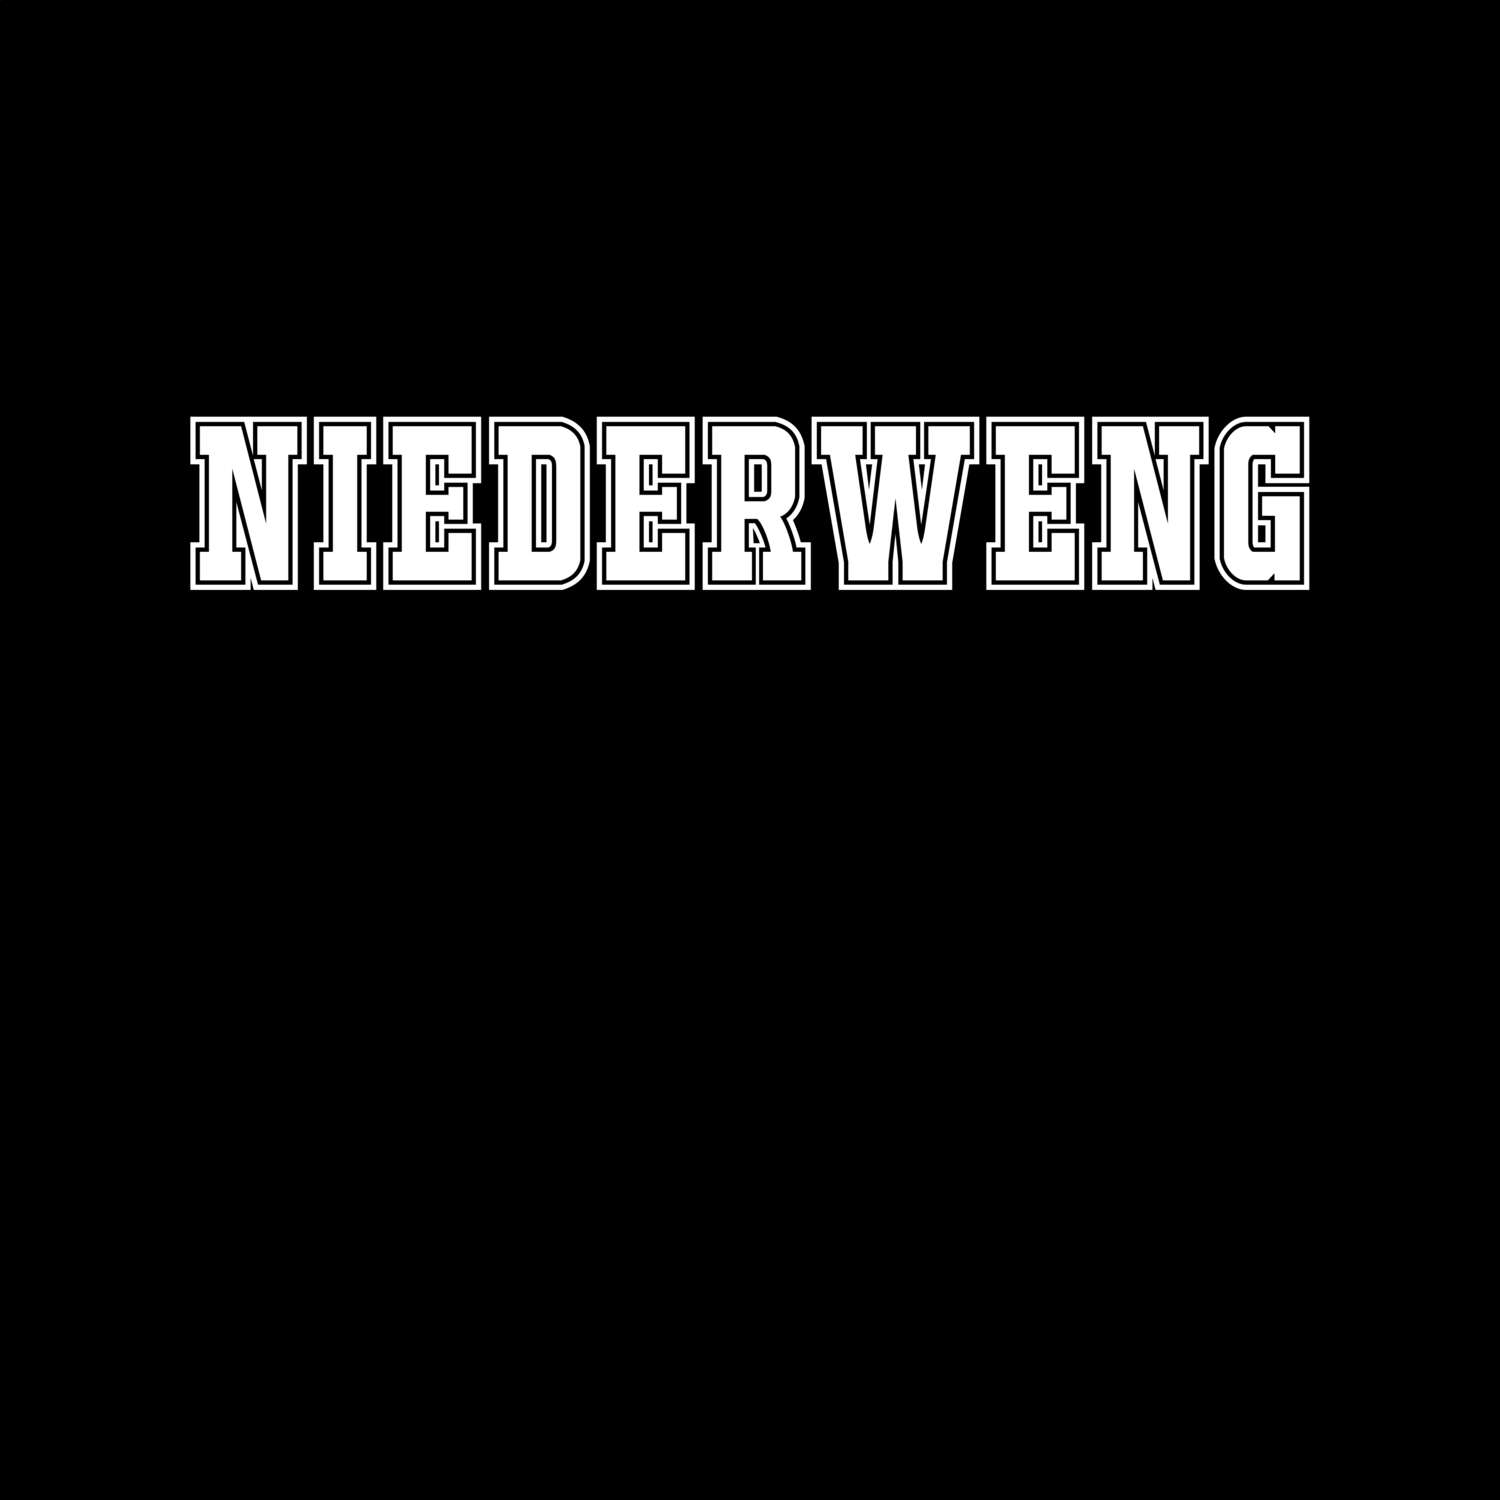 Niederweng T-Shirt »Classic«